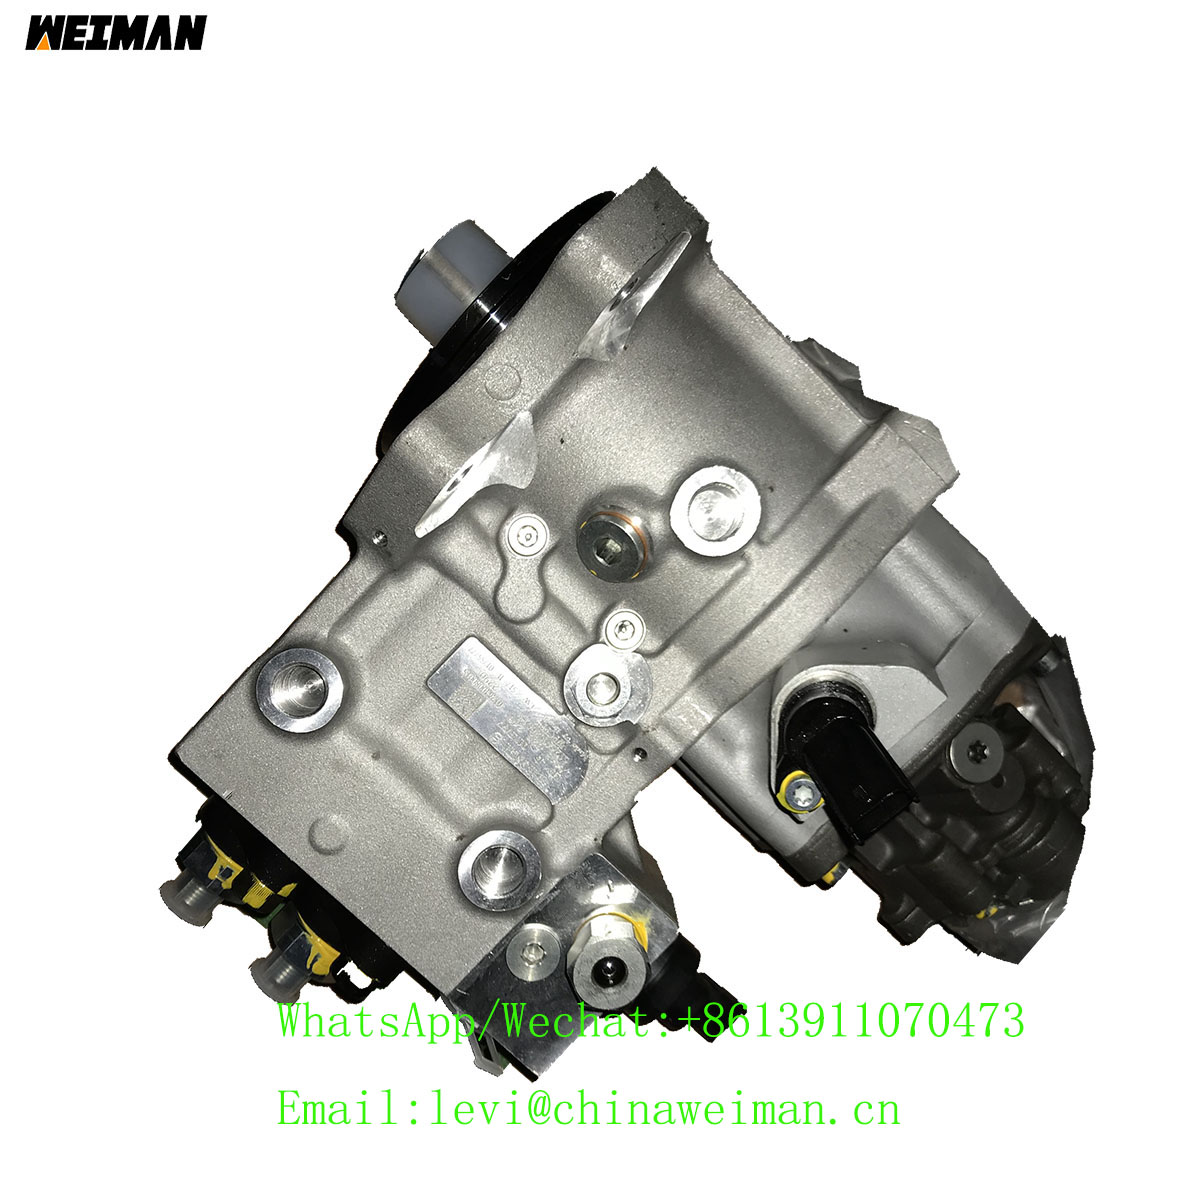 Diesel Weichai Engine WP6G125E332 Parts Pressure Pump 4110002989043 Fuel Injector 4110003435026